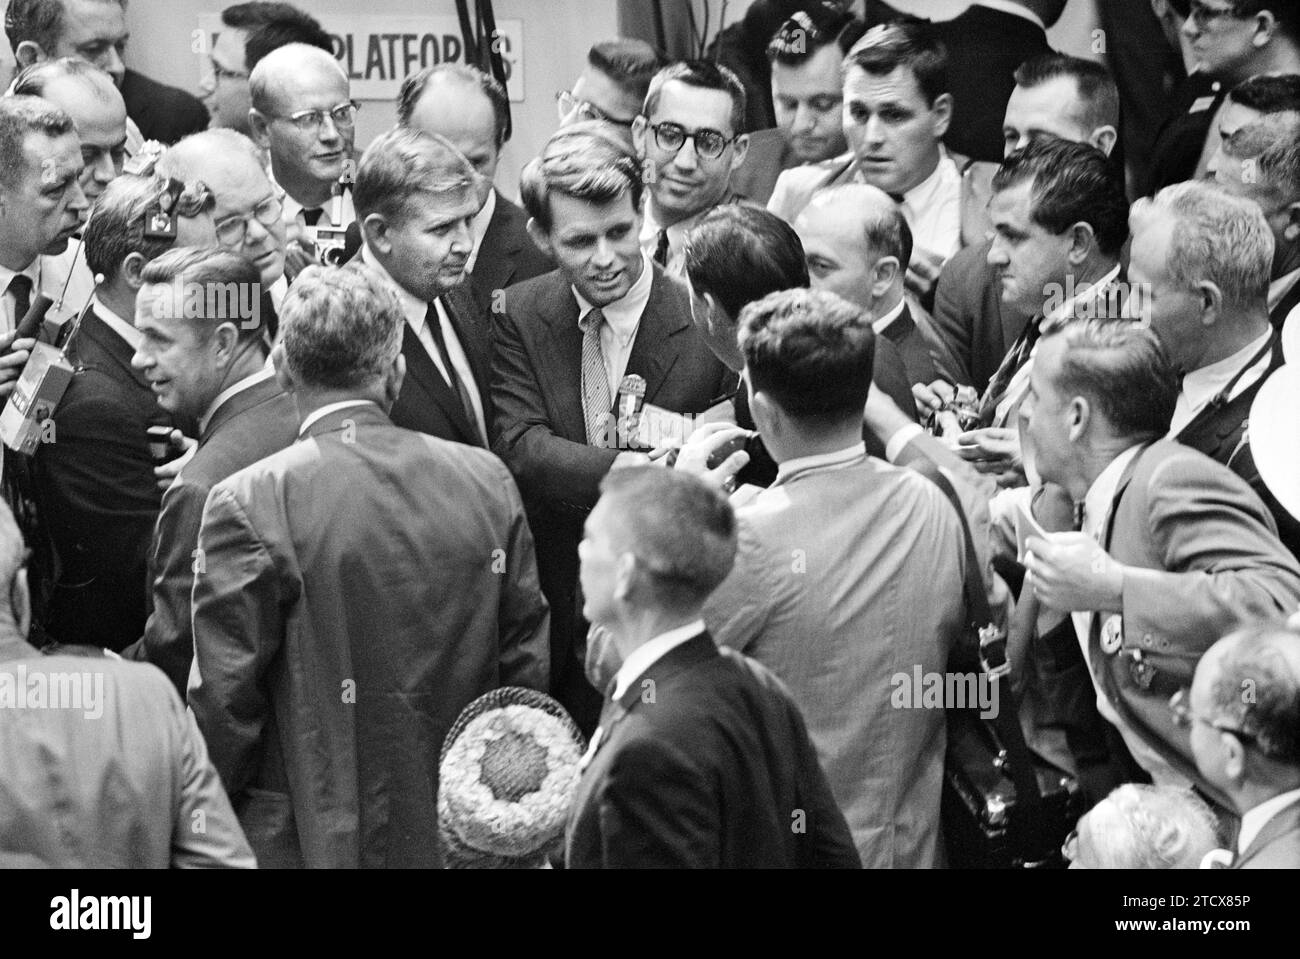 Robert F. Kennedy spricht mit den Delegierten auf der Kongressetage während der Democratic National Convention in Los Angeles, Kalifornien, USA, Thomas J. O'Halloran, U.S. News & World Report Magazine Photograph Collection, 12. Juli 1960 Stockfoto